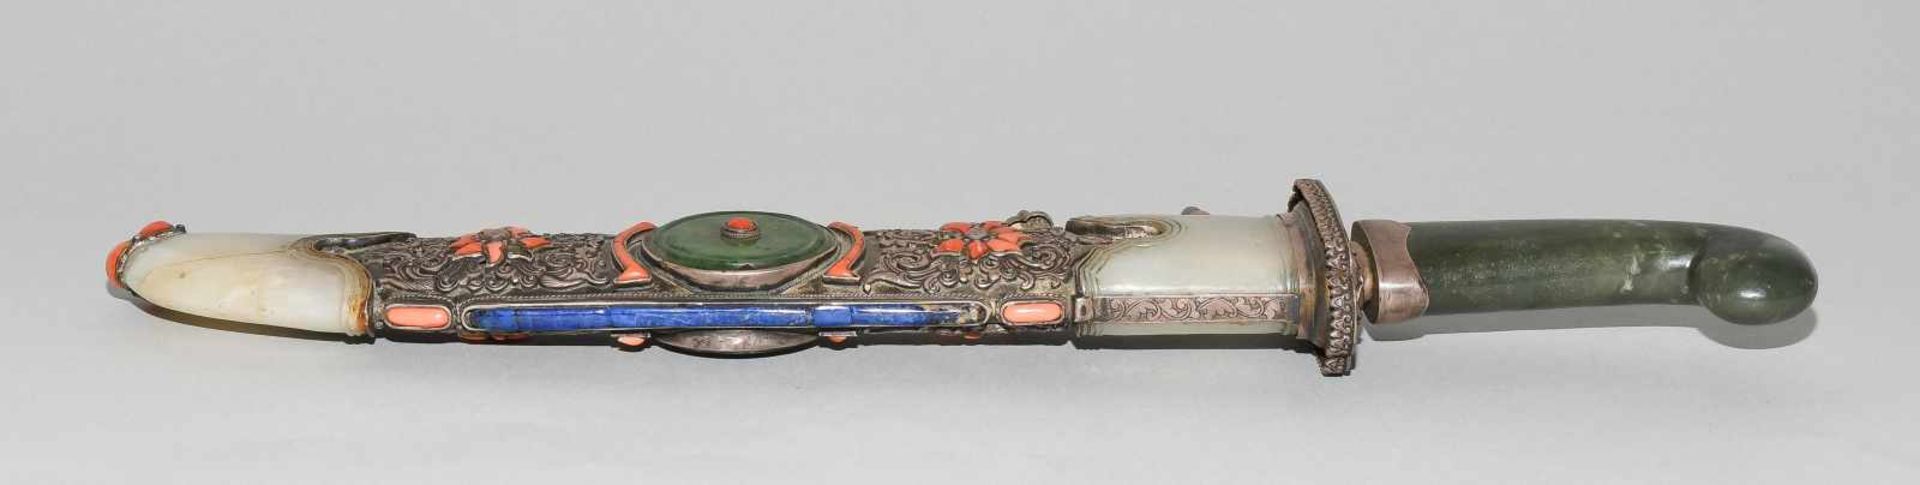 ZeremonialschwertTibet oder Mongolei. 18./19.Jh. Eisenklinge. Griff aus Nephrit-Jade. Scheide aus - Bild 2 aus 11